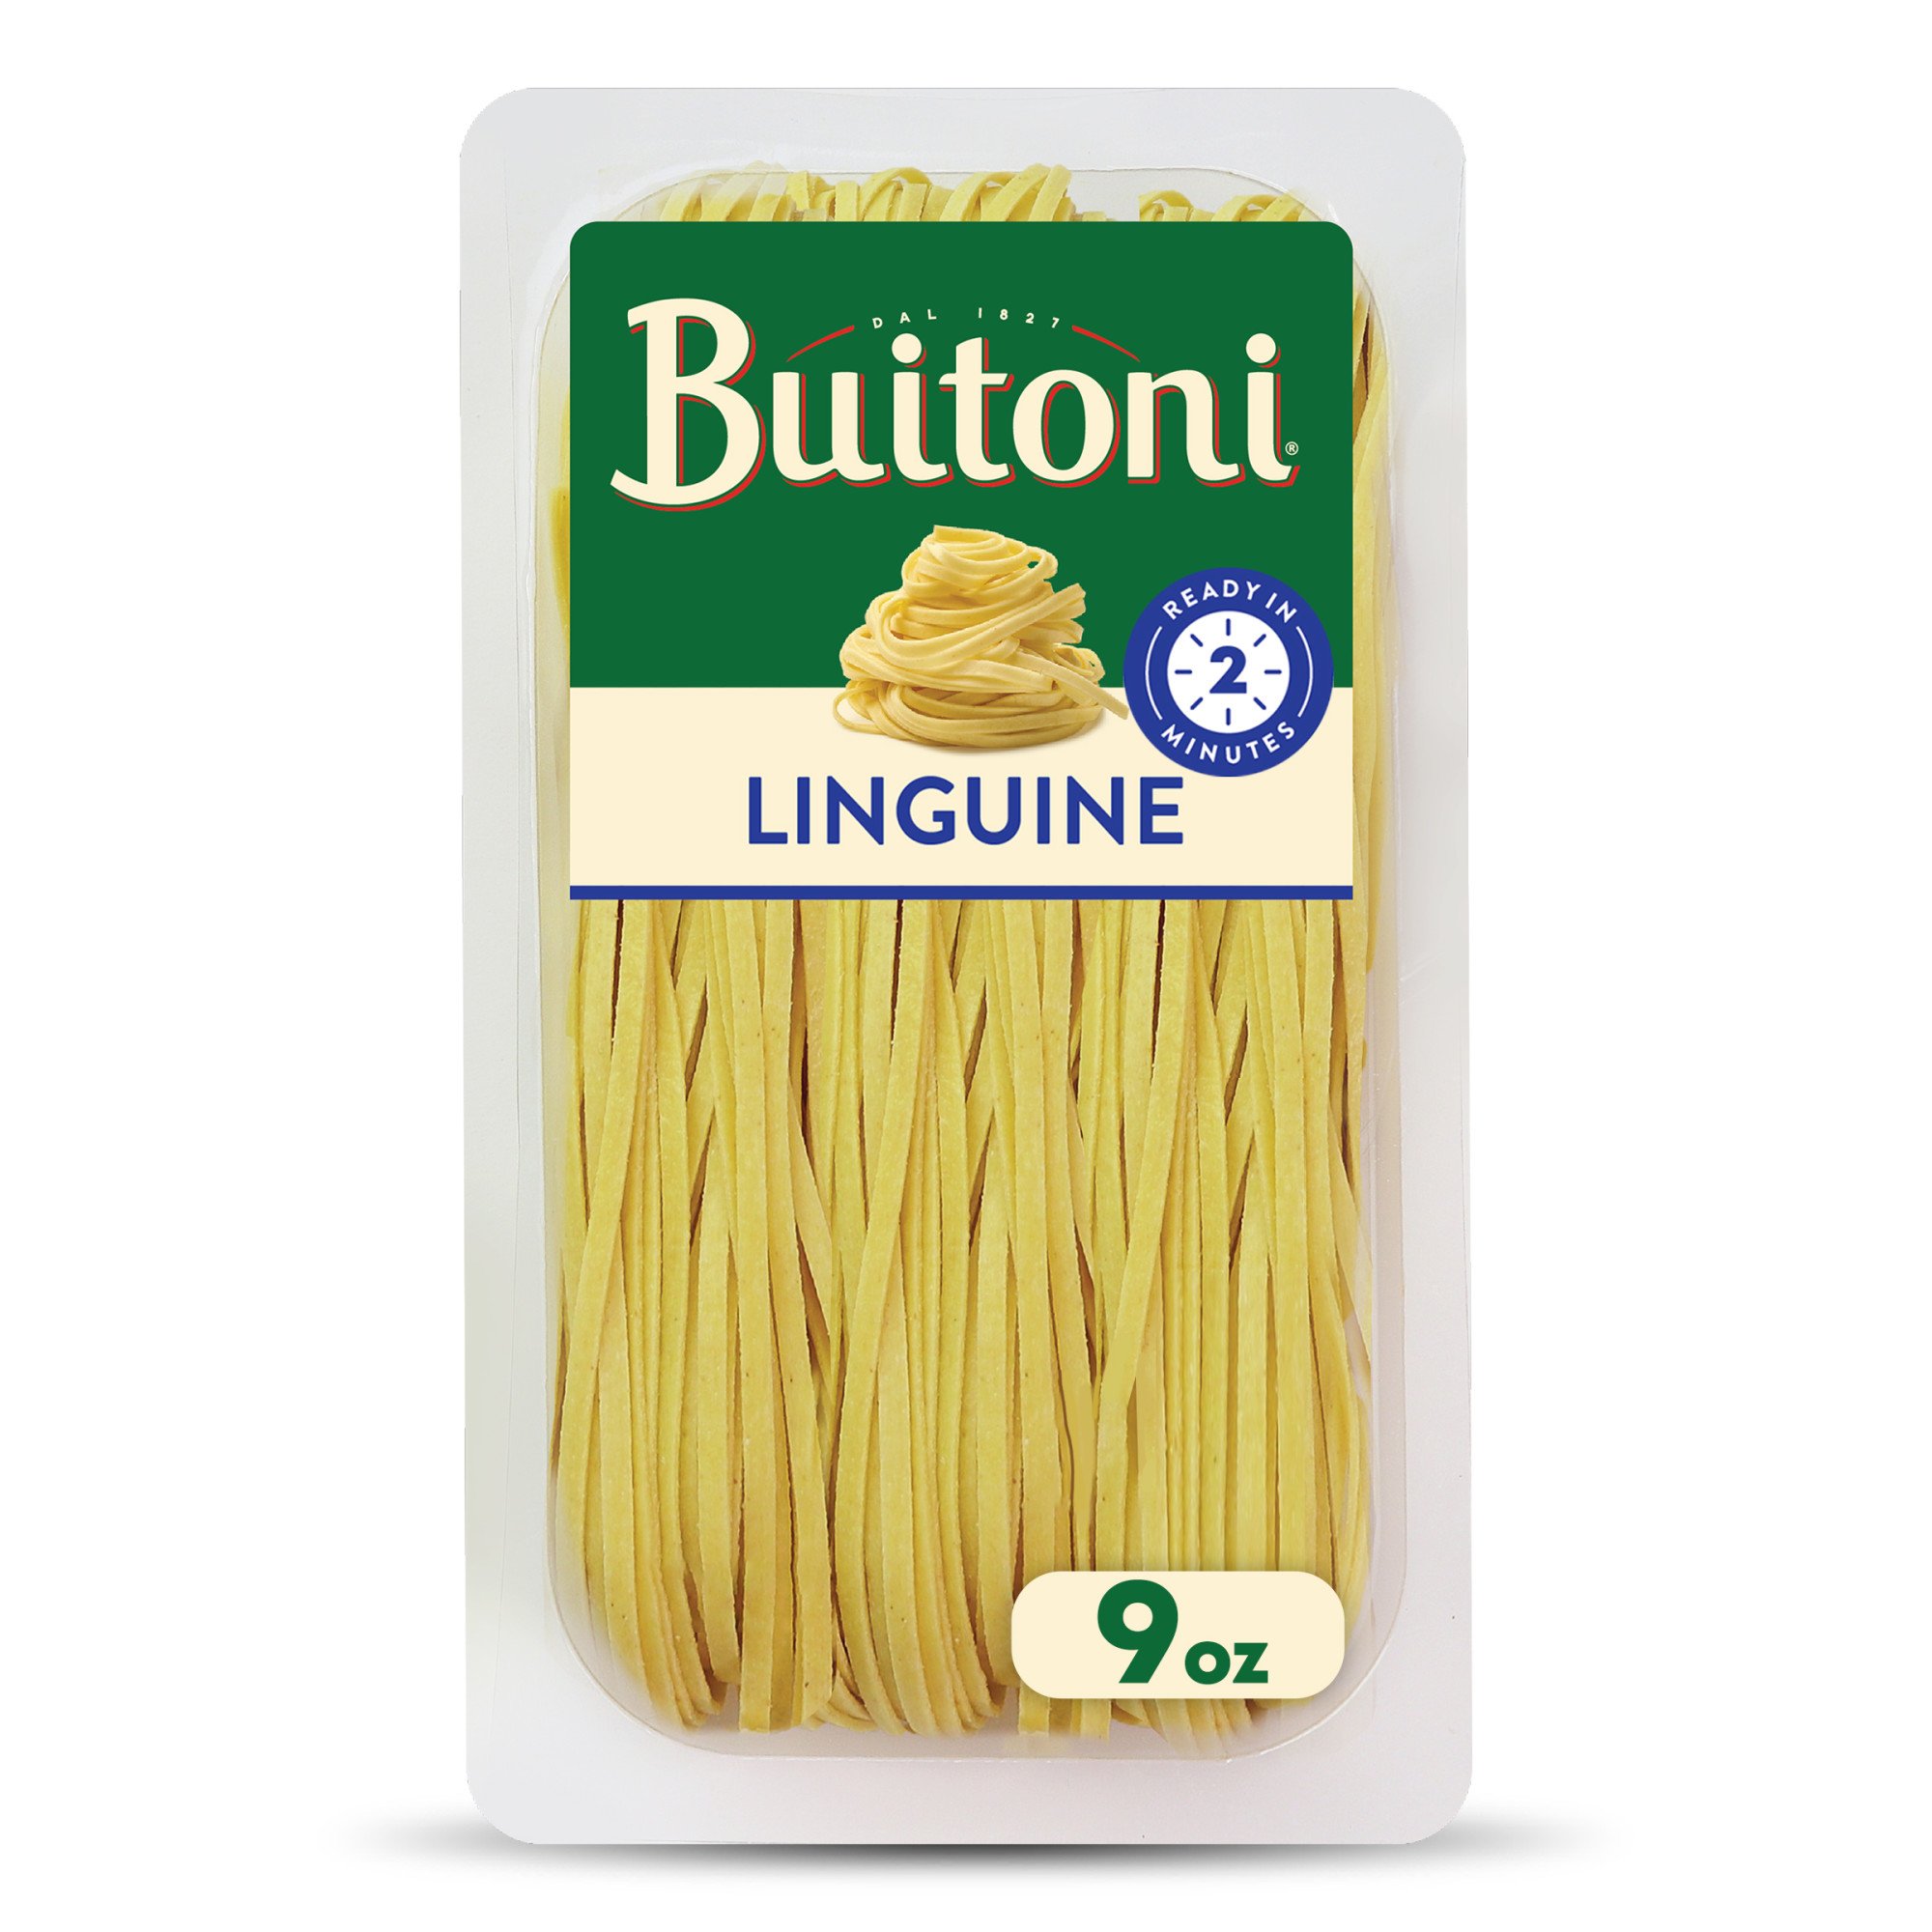 Buitoni Linguine - Shop Pasta & Rice at H-E-B